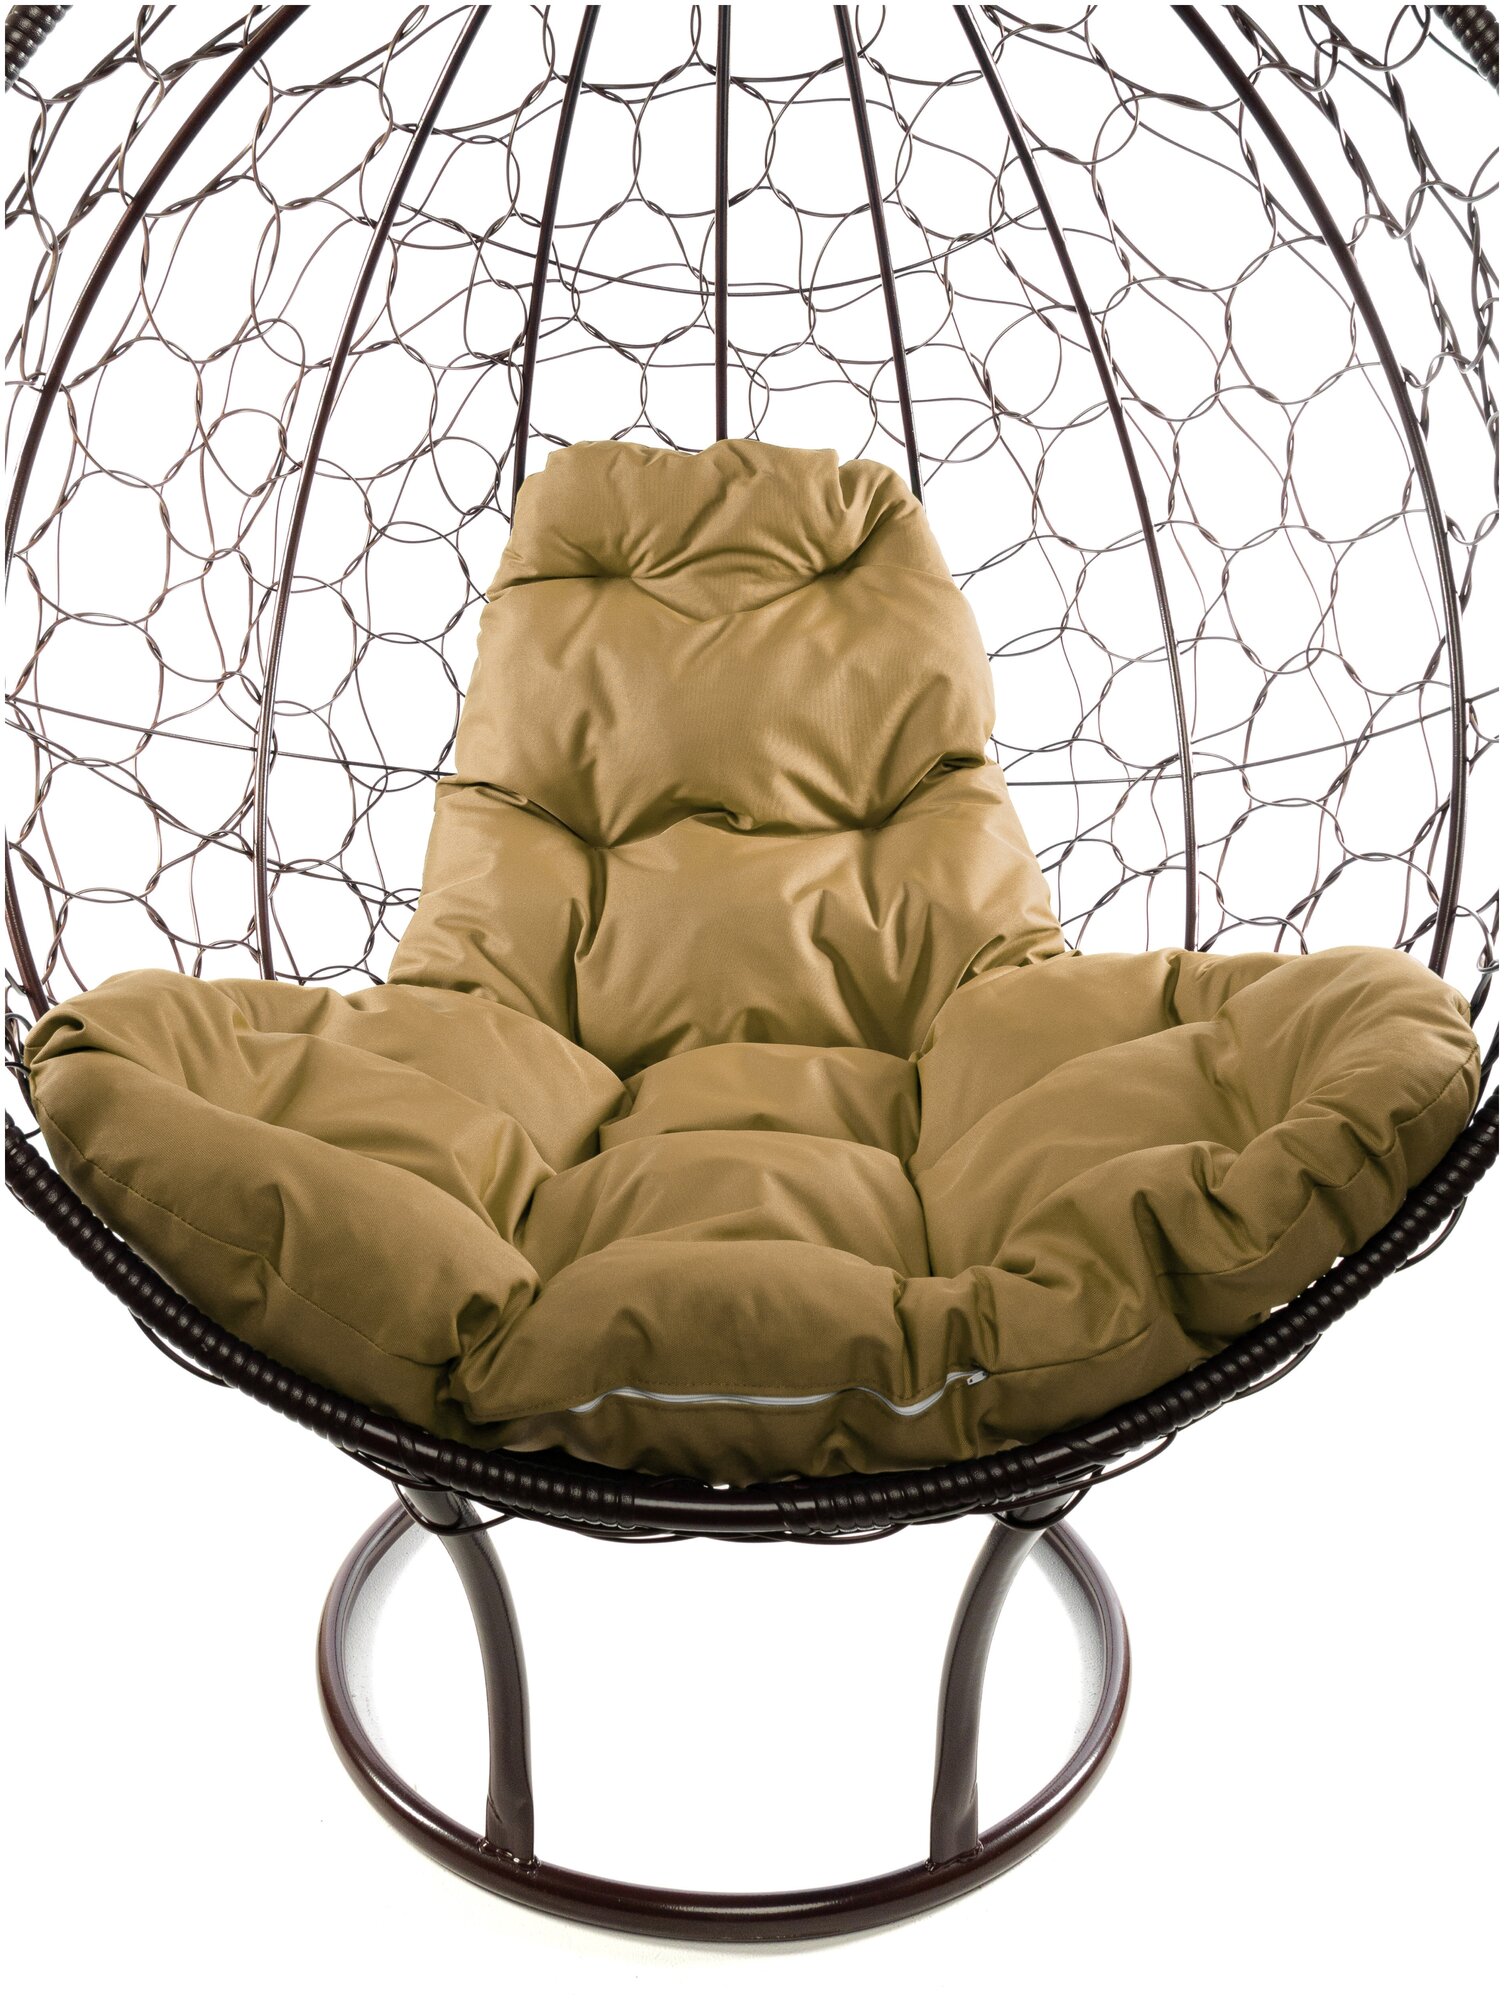 Кресло M-Group круг на подставке ротанг коричневое, бежевая подушка - фотография № 9